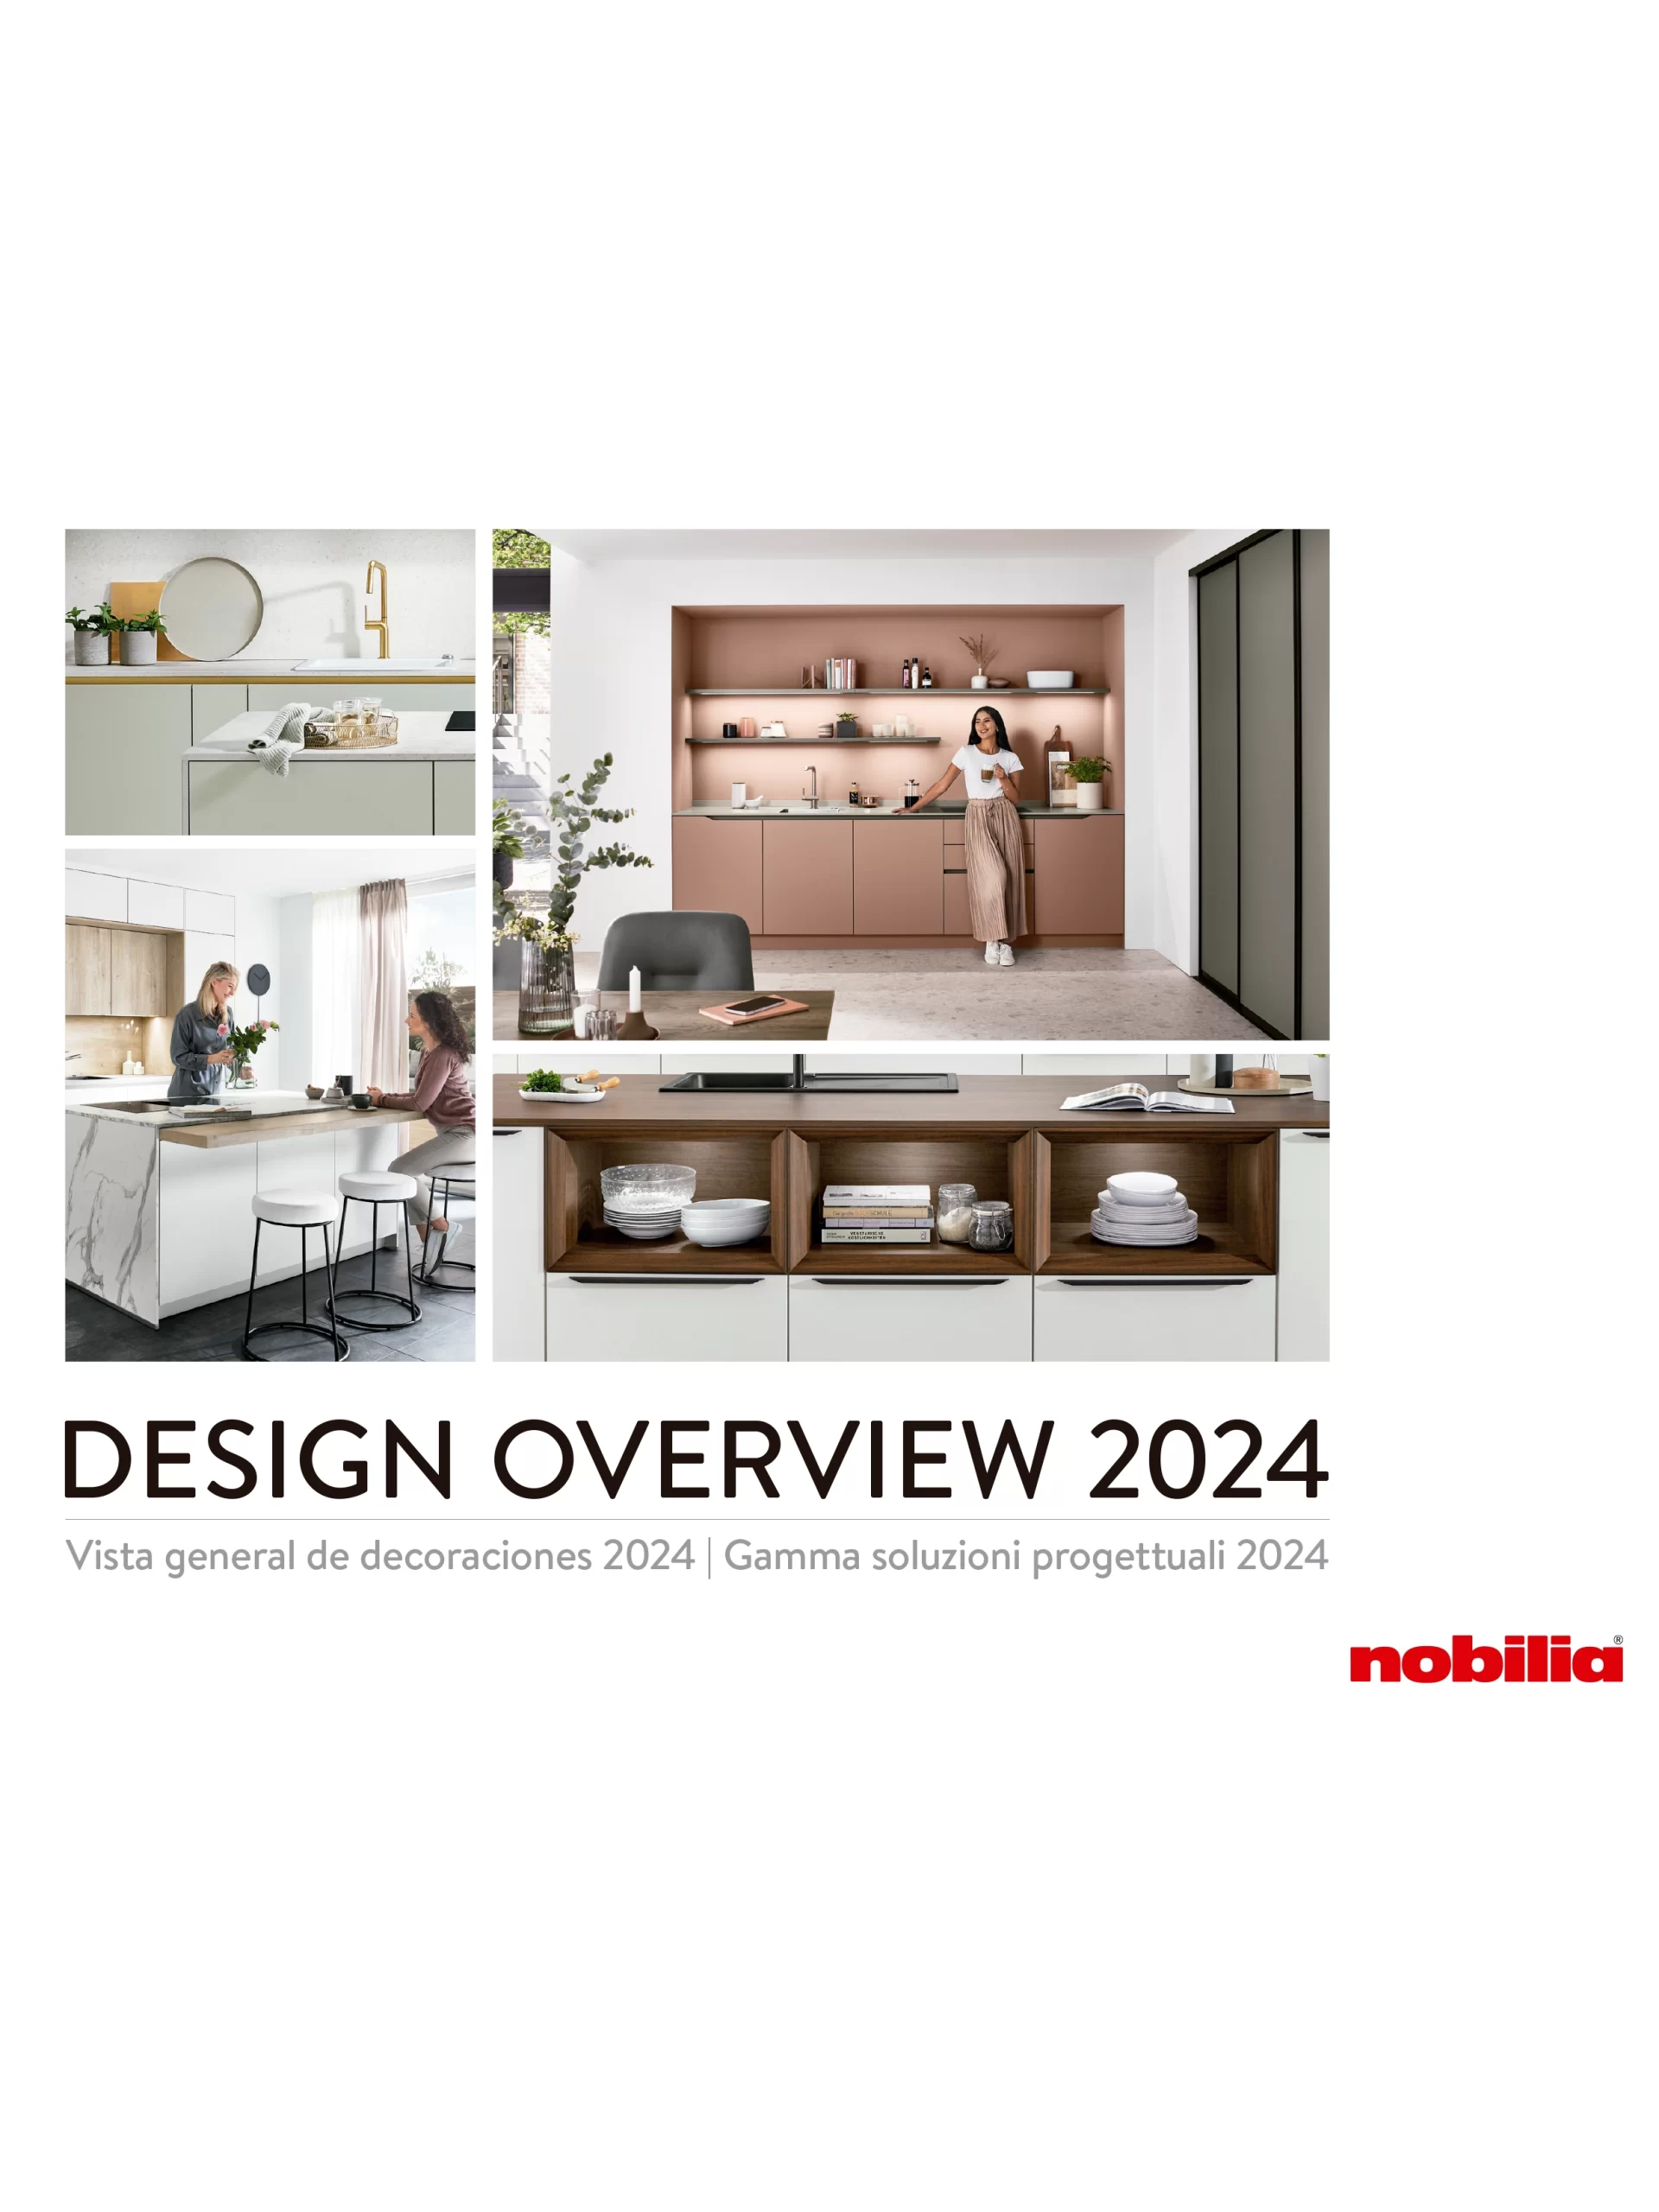 Design Overview_nobilia_2024_EN_ES_IT-2